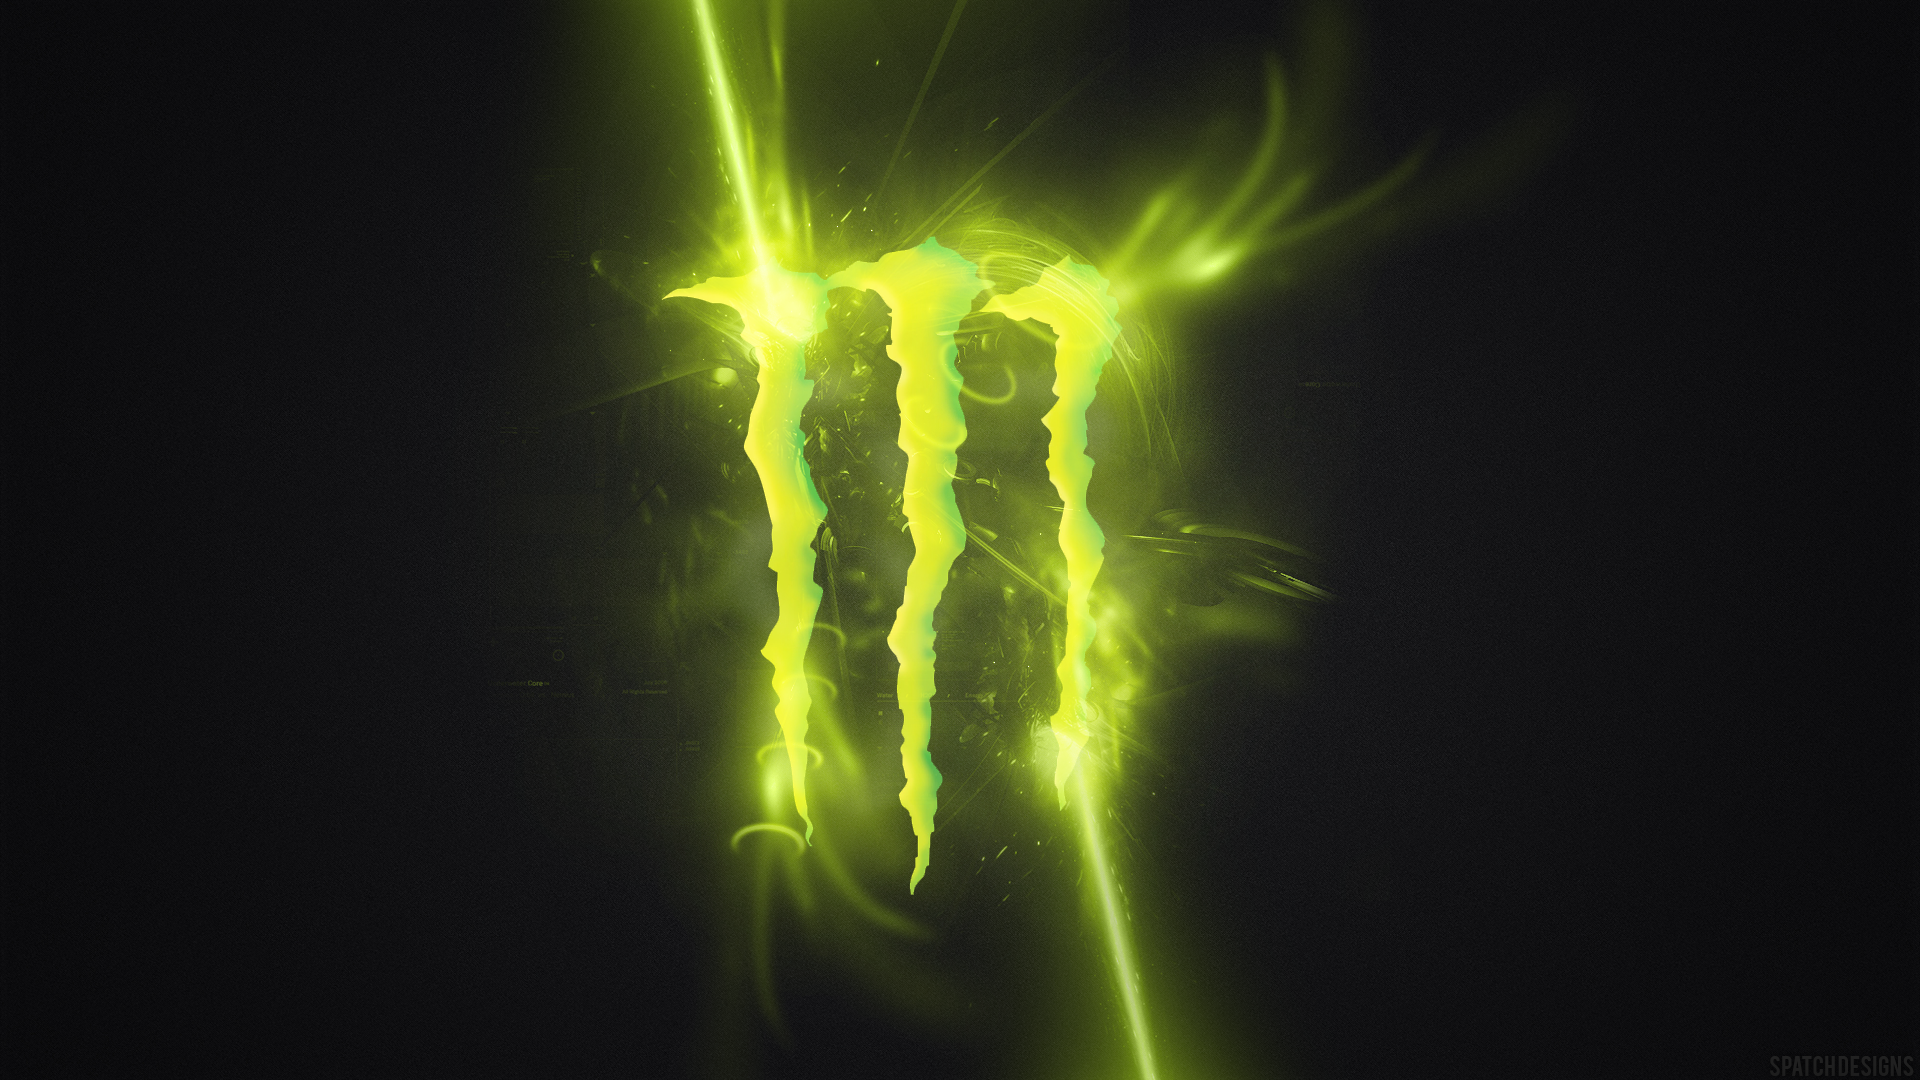 Monster Energy Wallpaper HD 